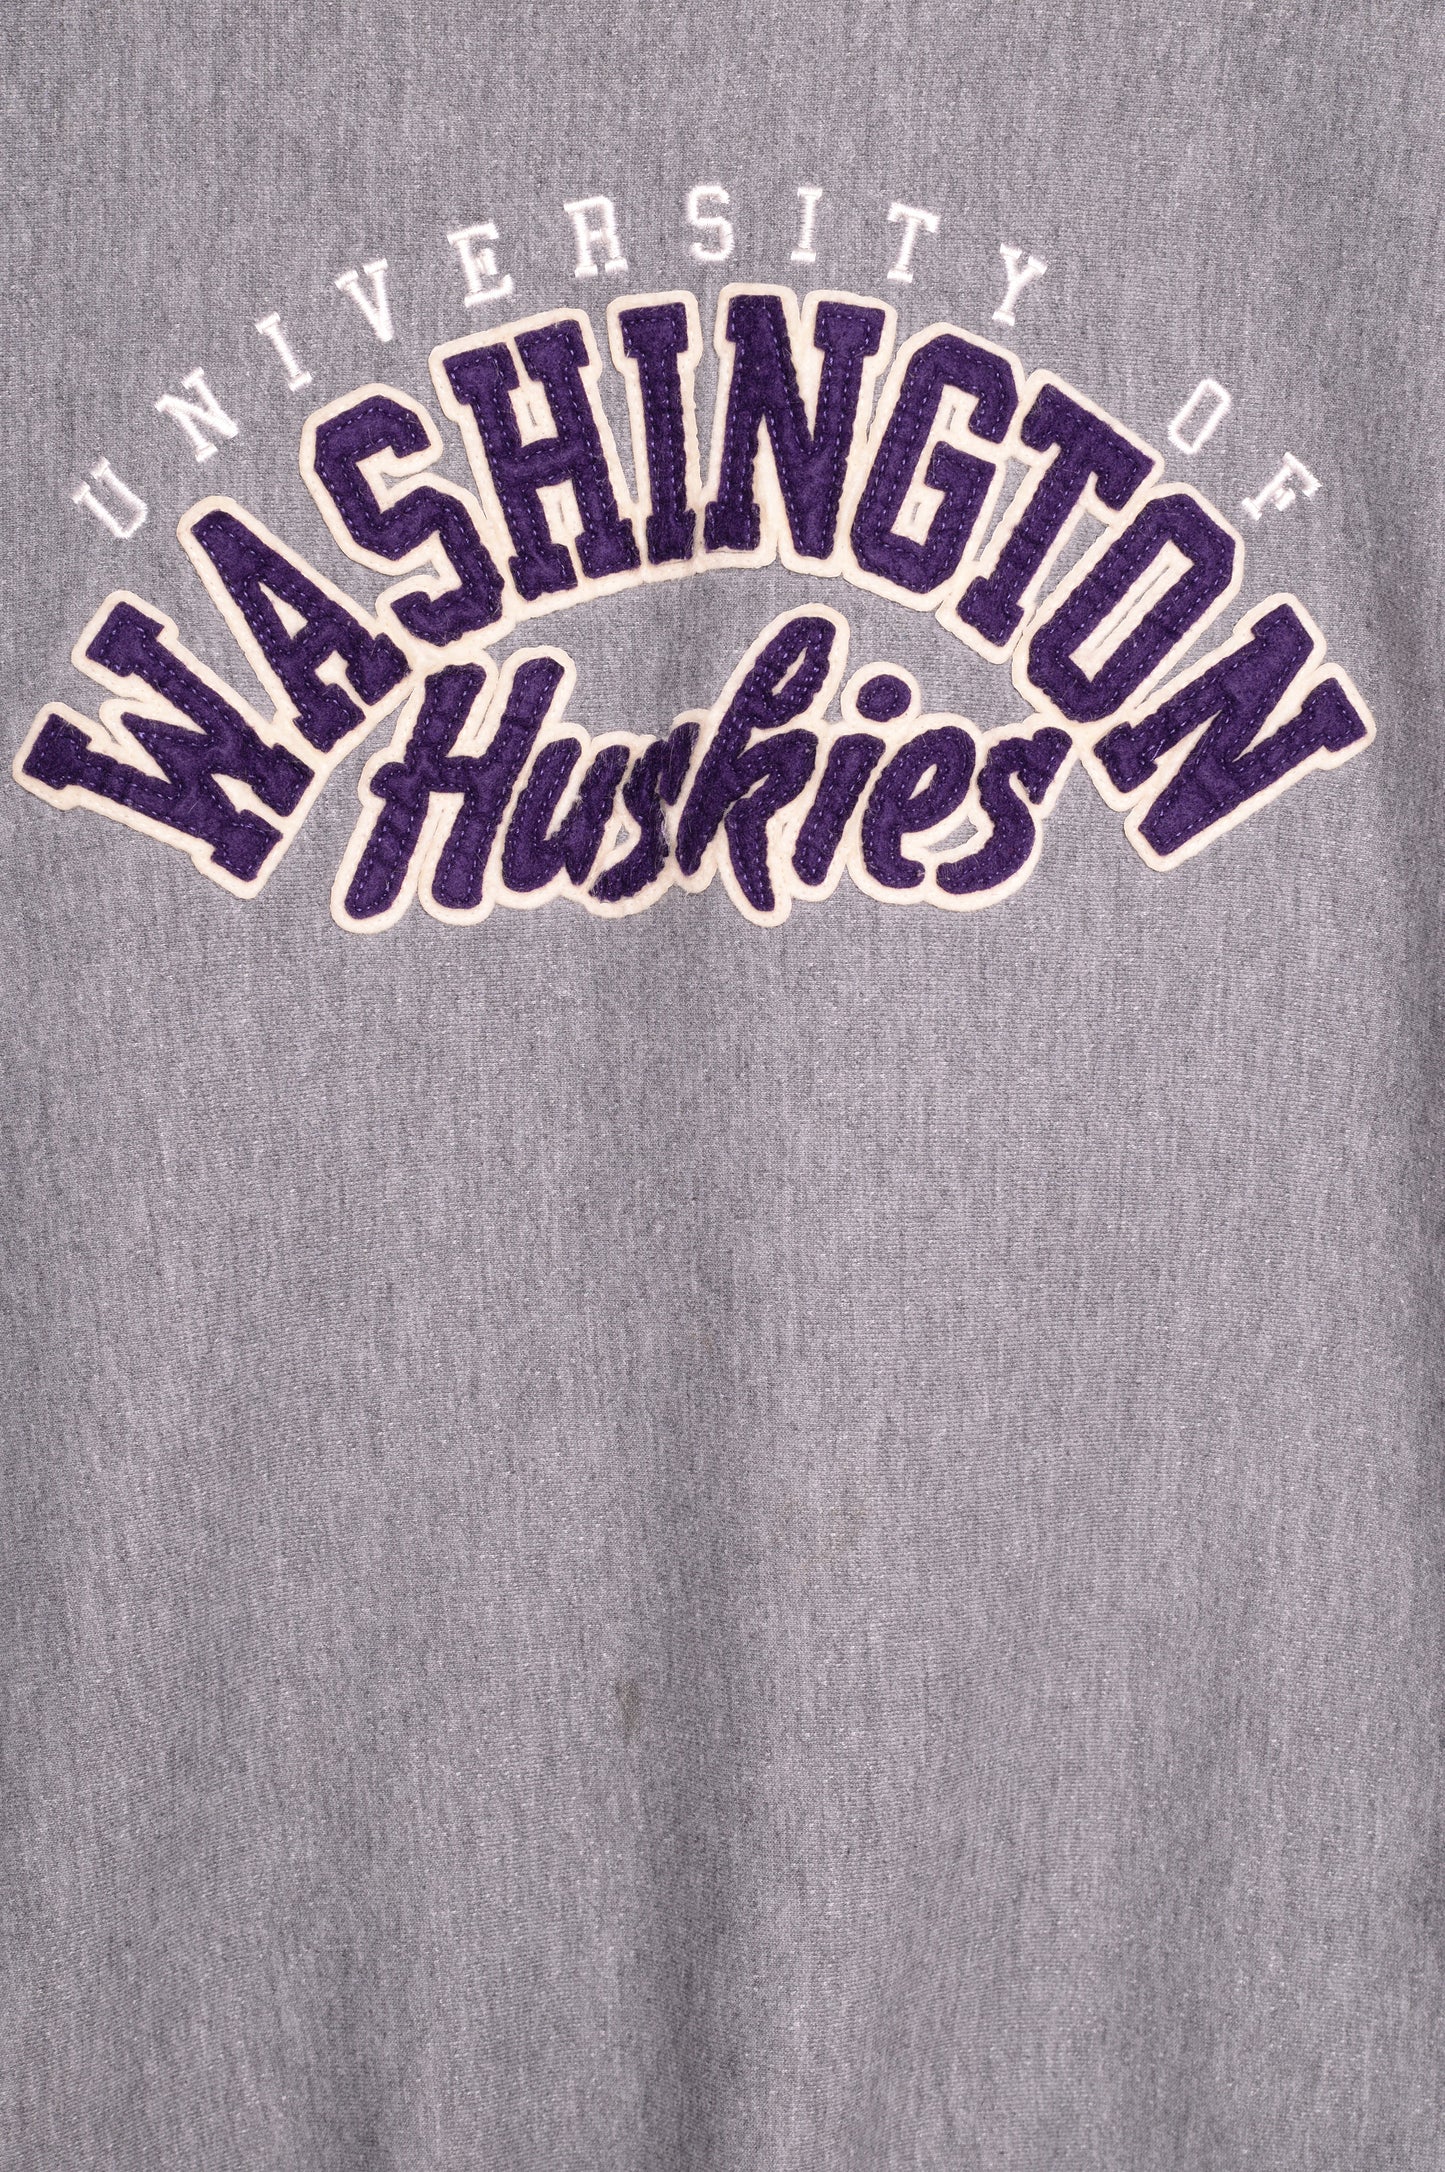 University of Washington Huskies Sweatshirt